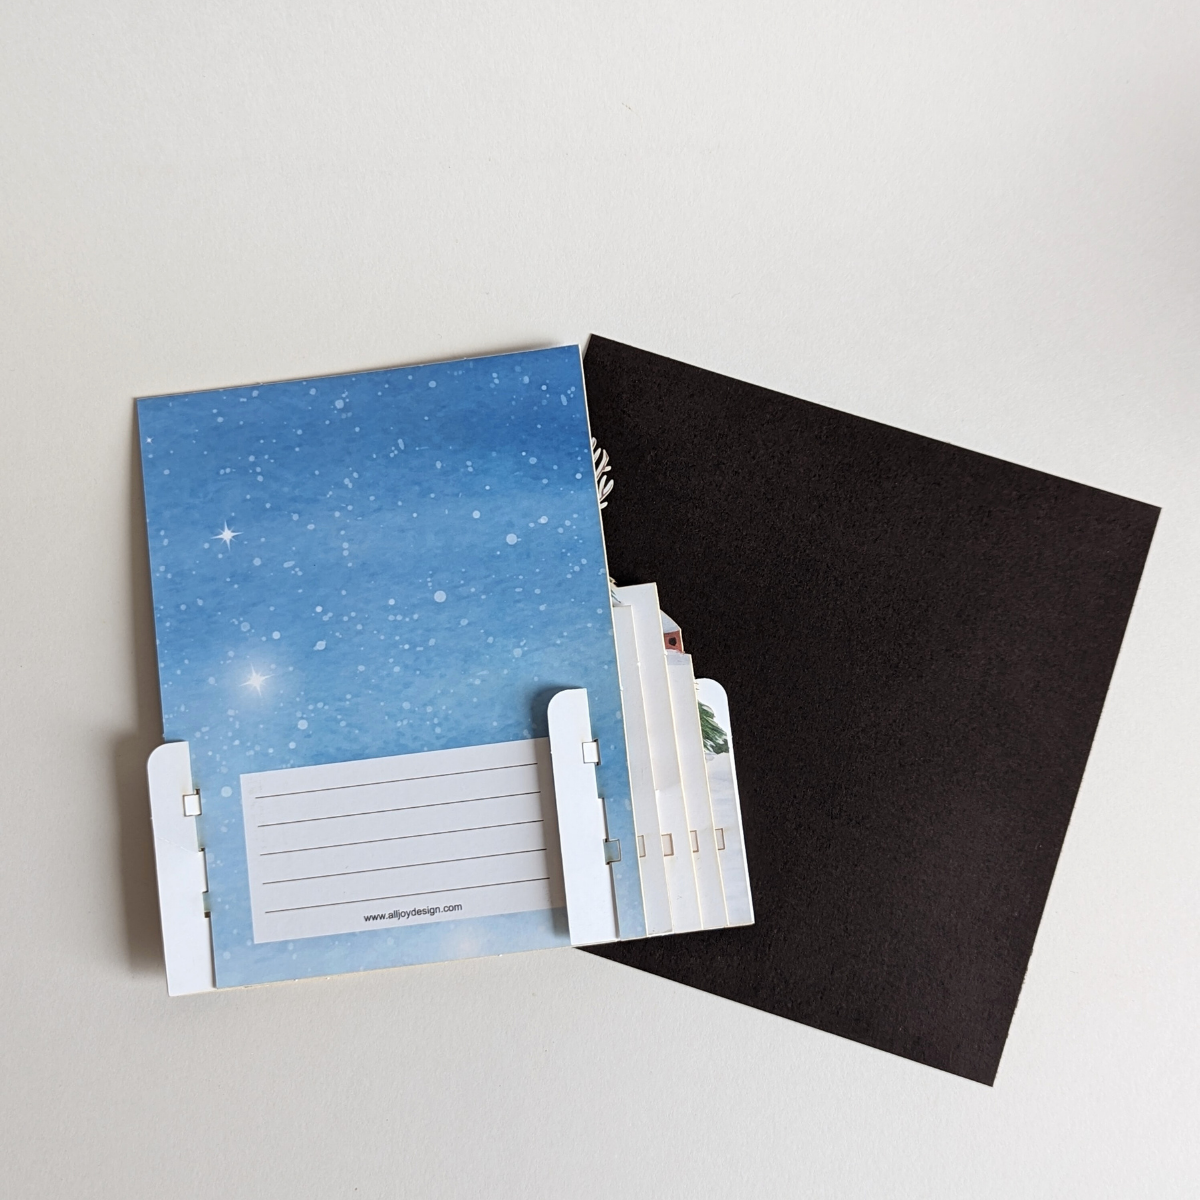 Vous pouvez ajouter un message chaleureux et personnalisé au dos de la carte pour partager vos vœux festifs.